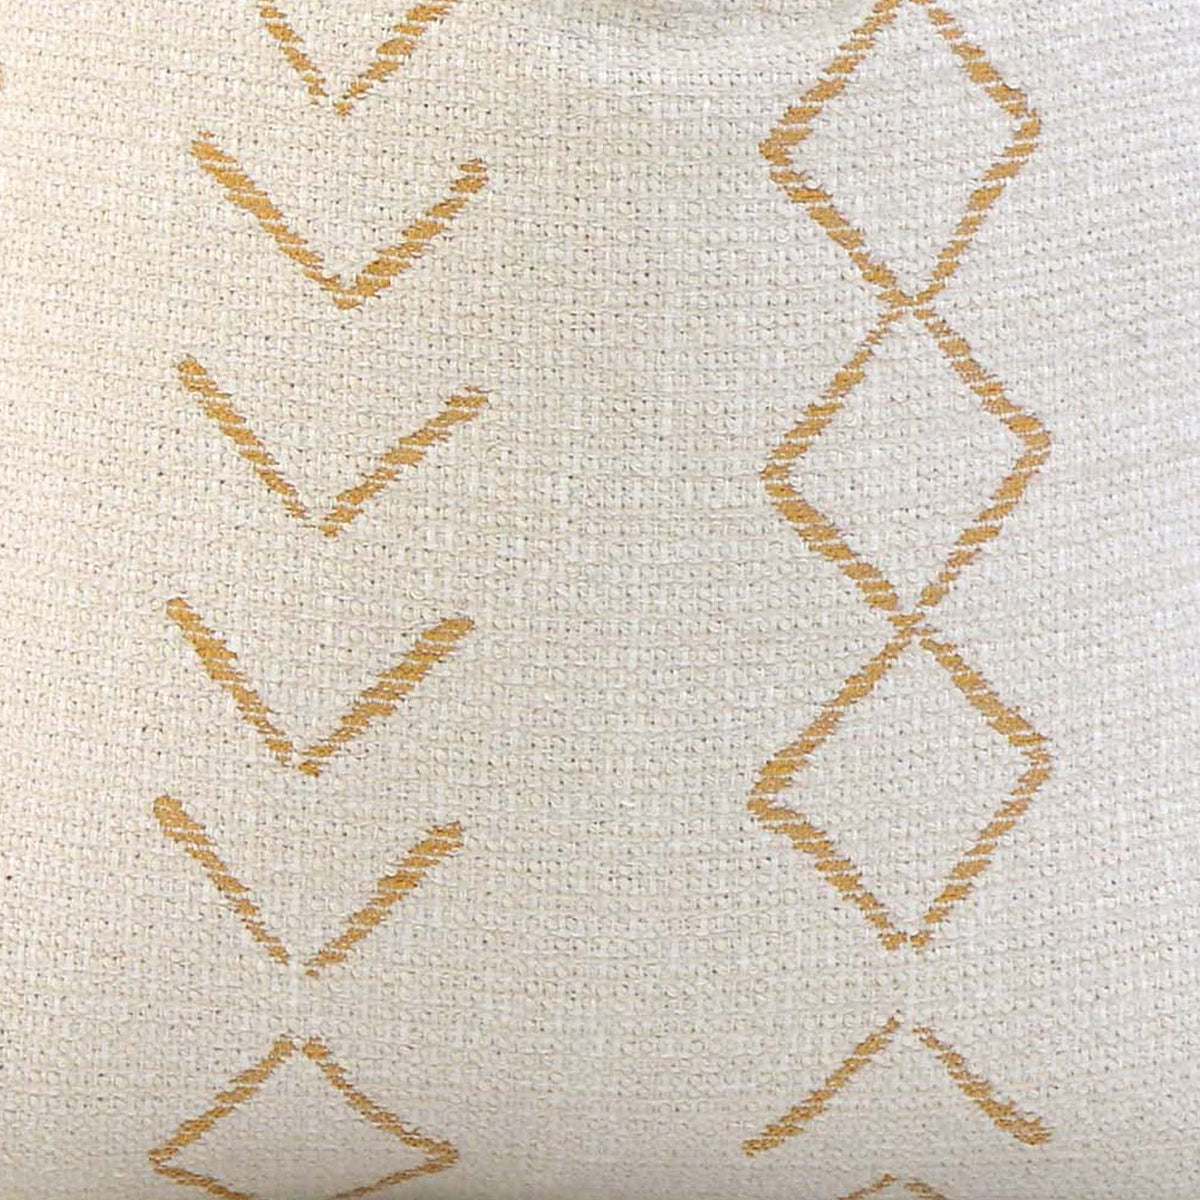 Anasazi Performance Straw / 4x4 inch Fabric Swatch